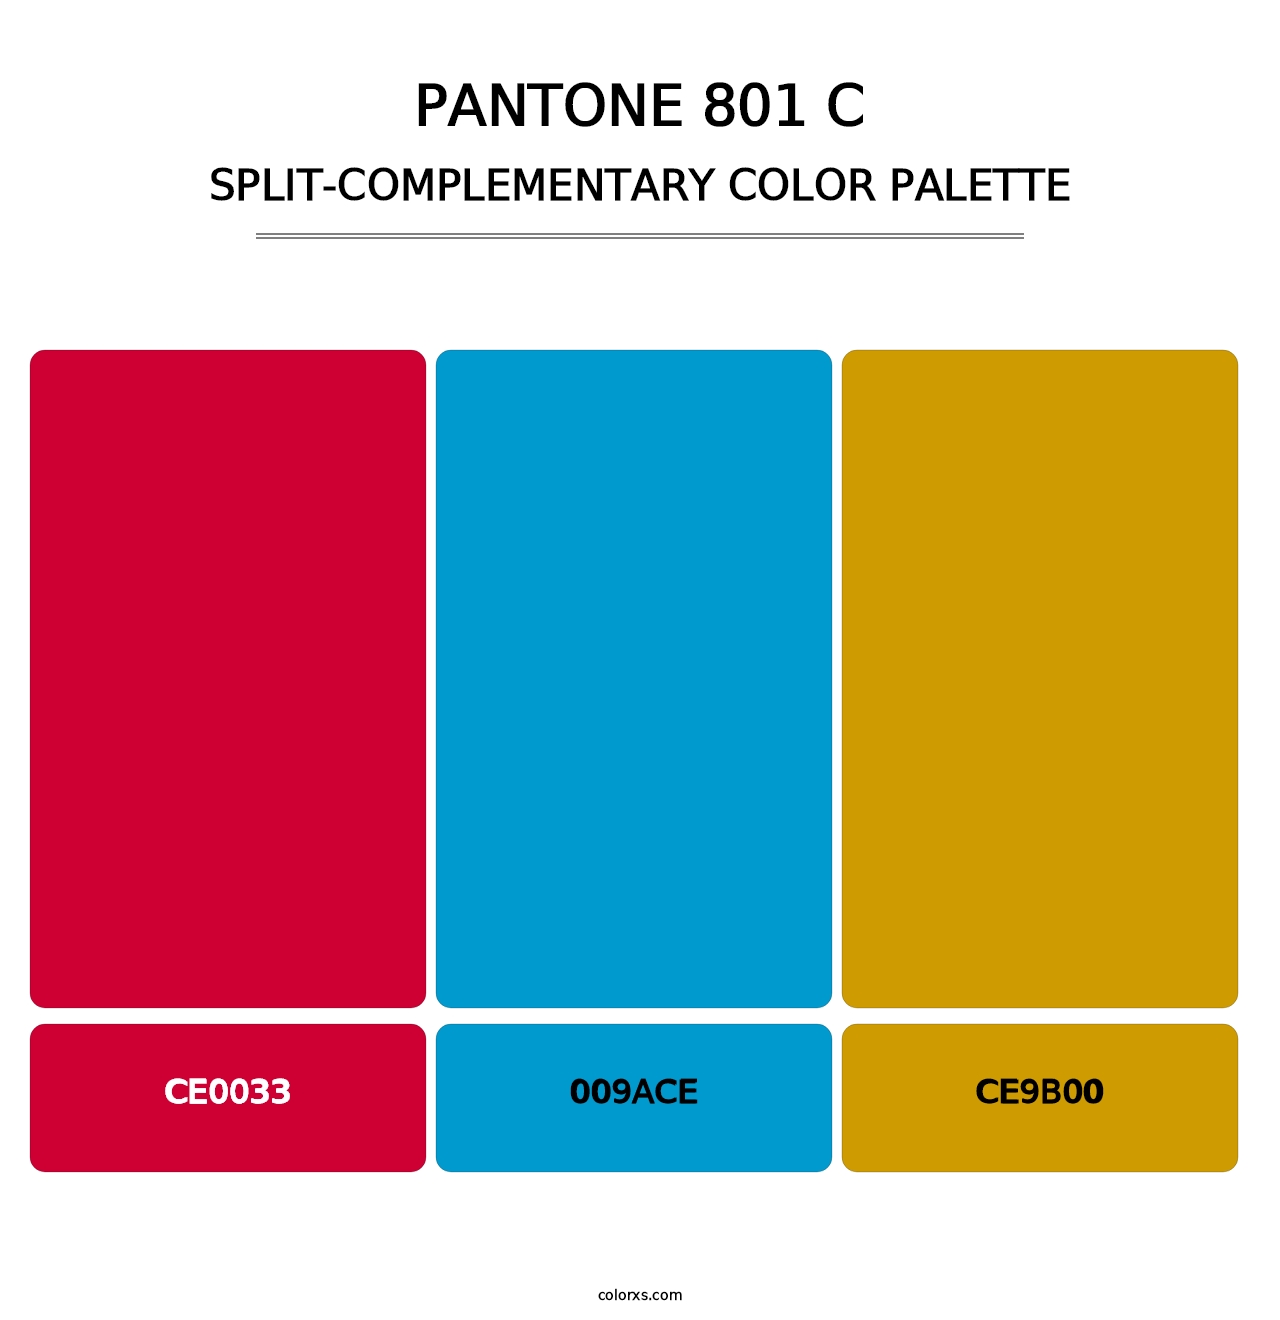 PANTONE 801 C - Split-Complementary Color Palette